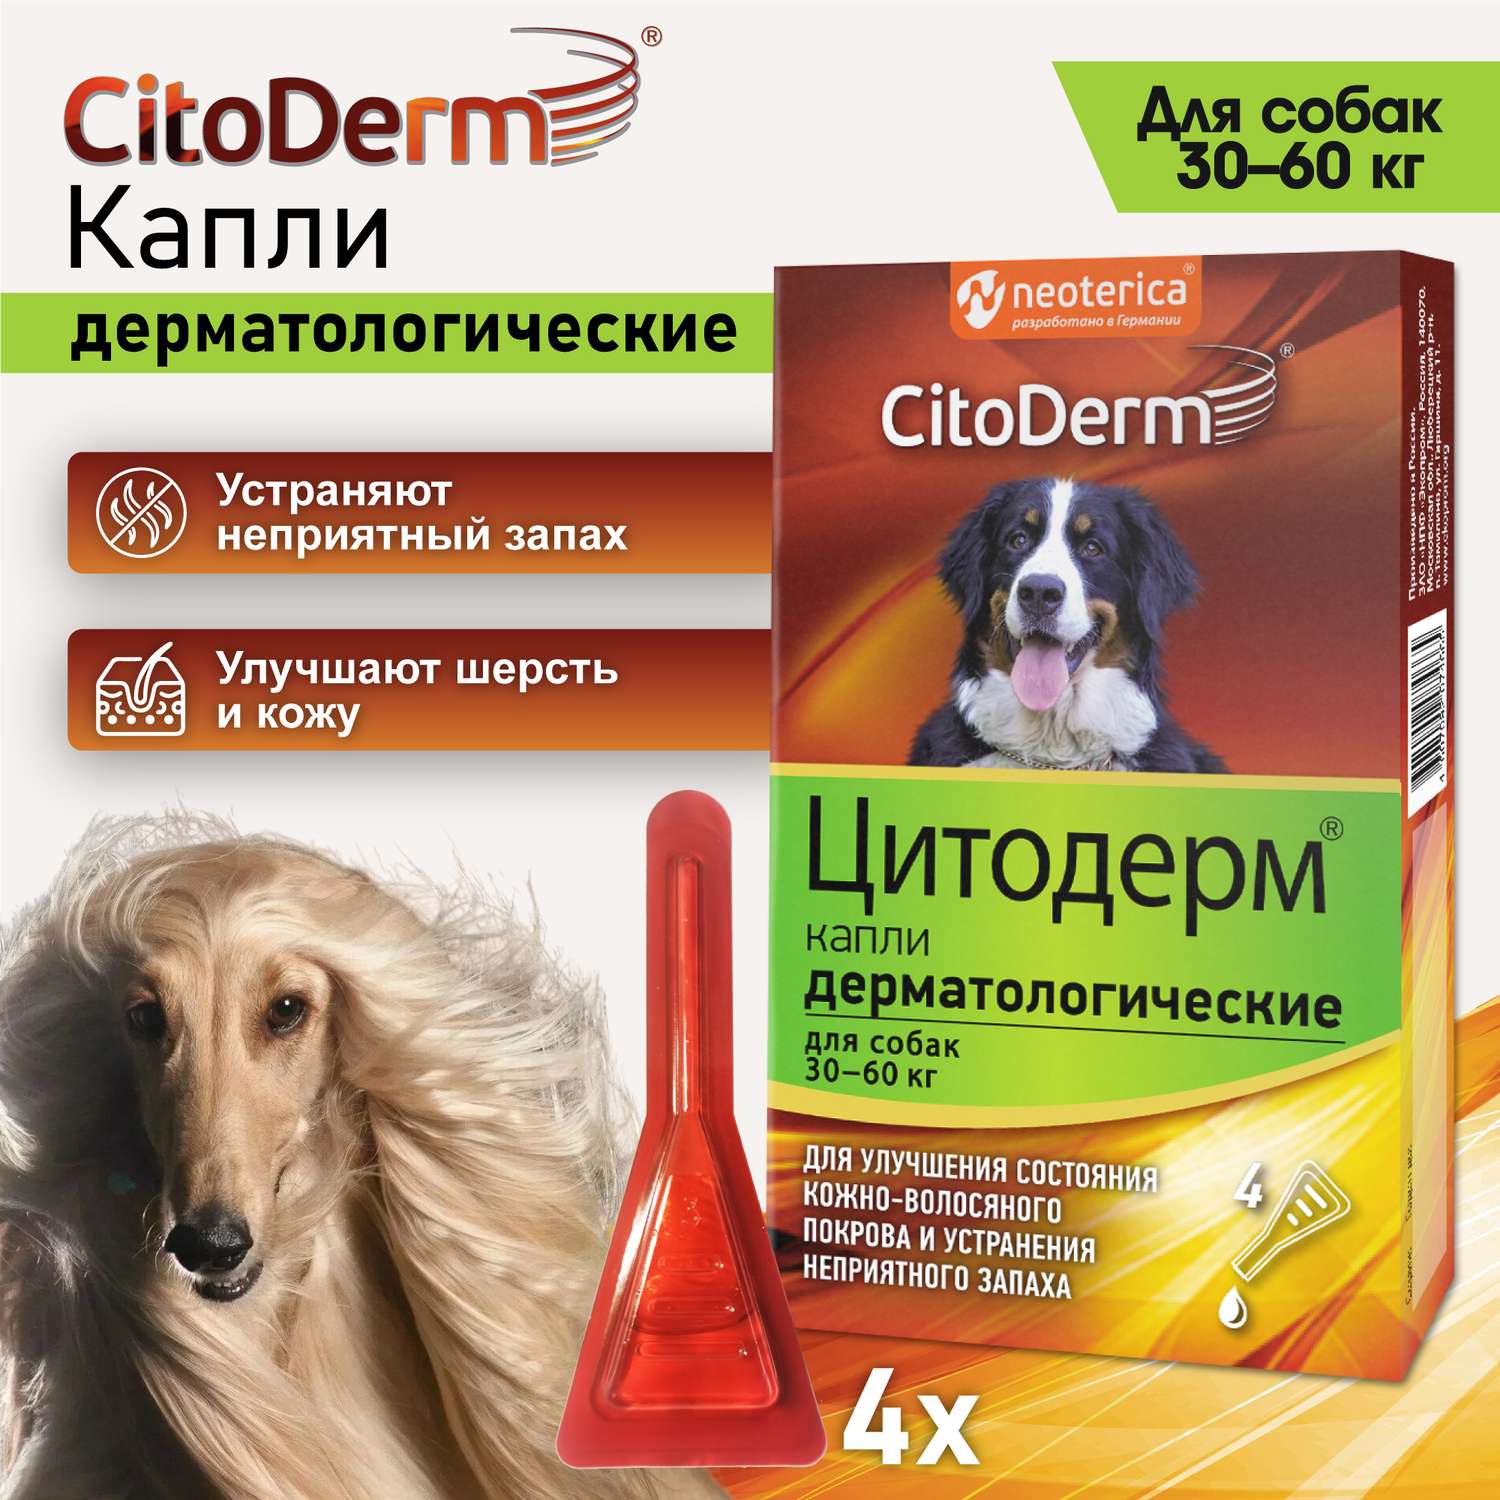 Капли для собак CitoDerm 30-60кг дерматологические 6мл - фото 2